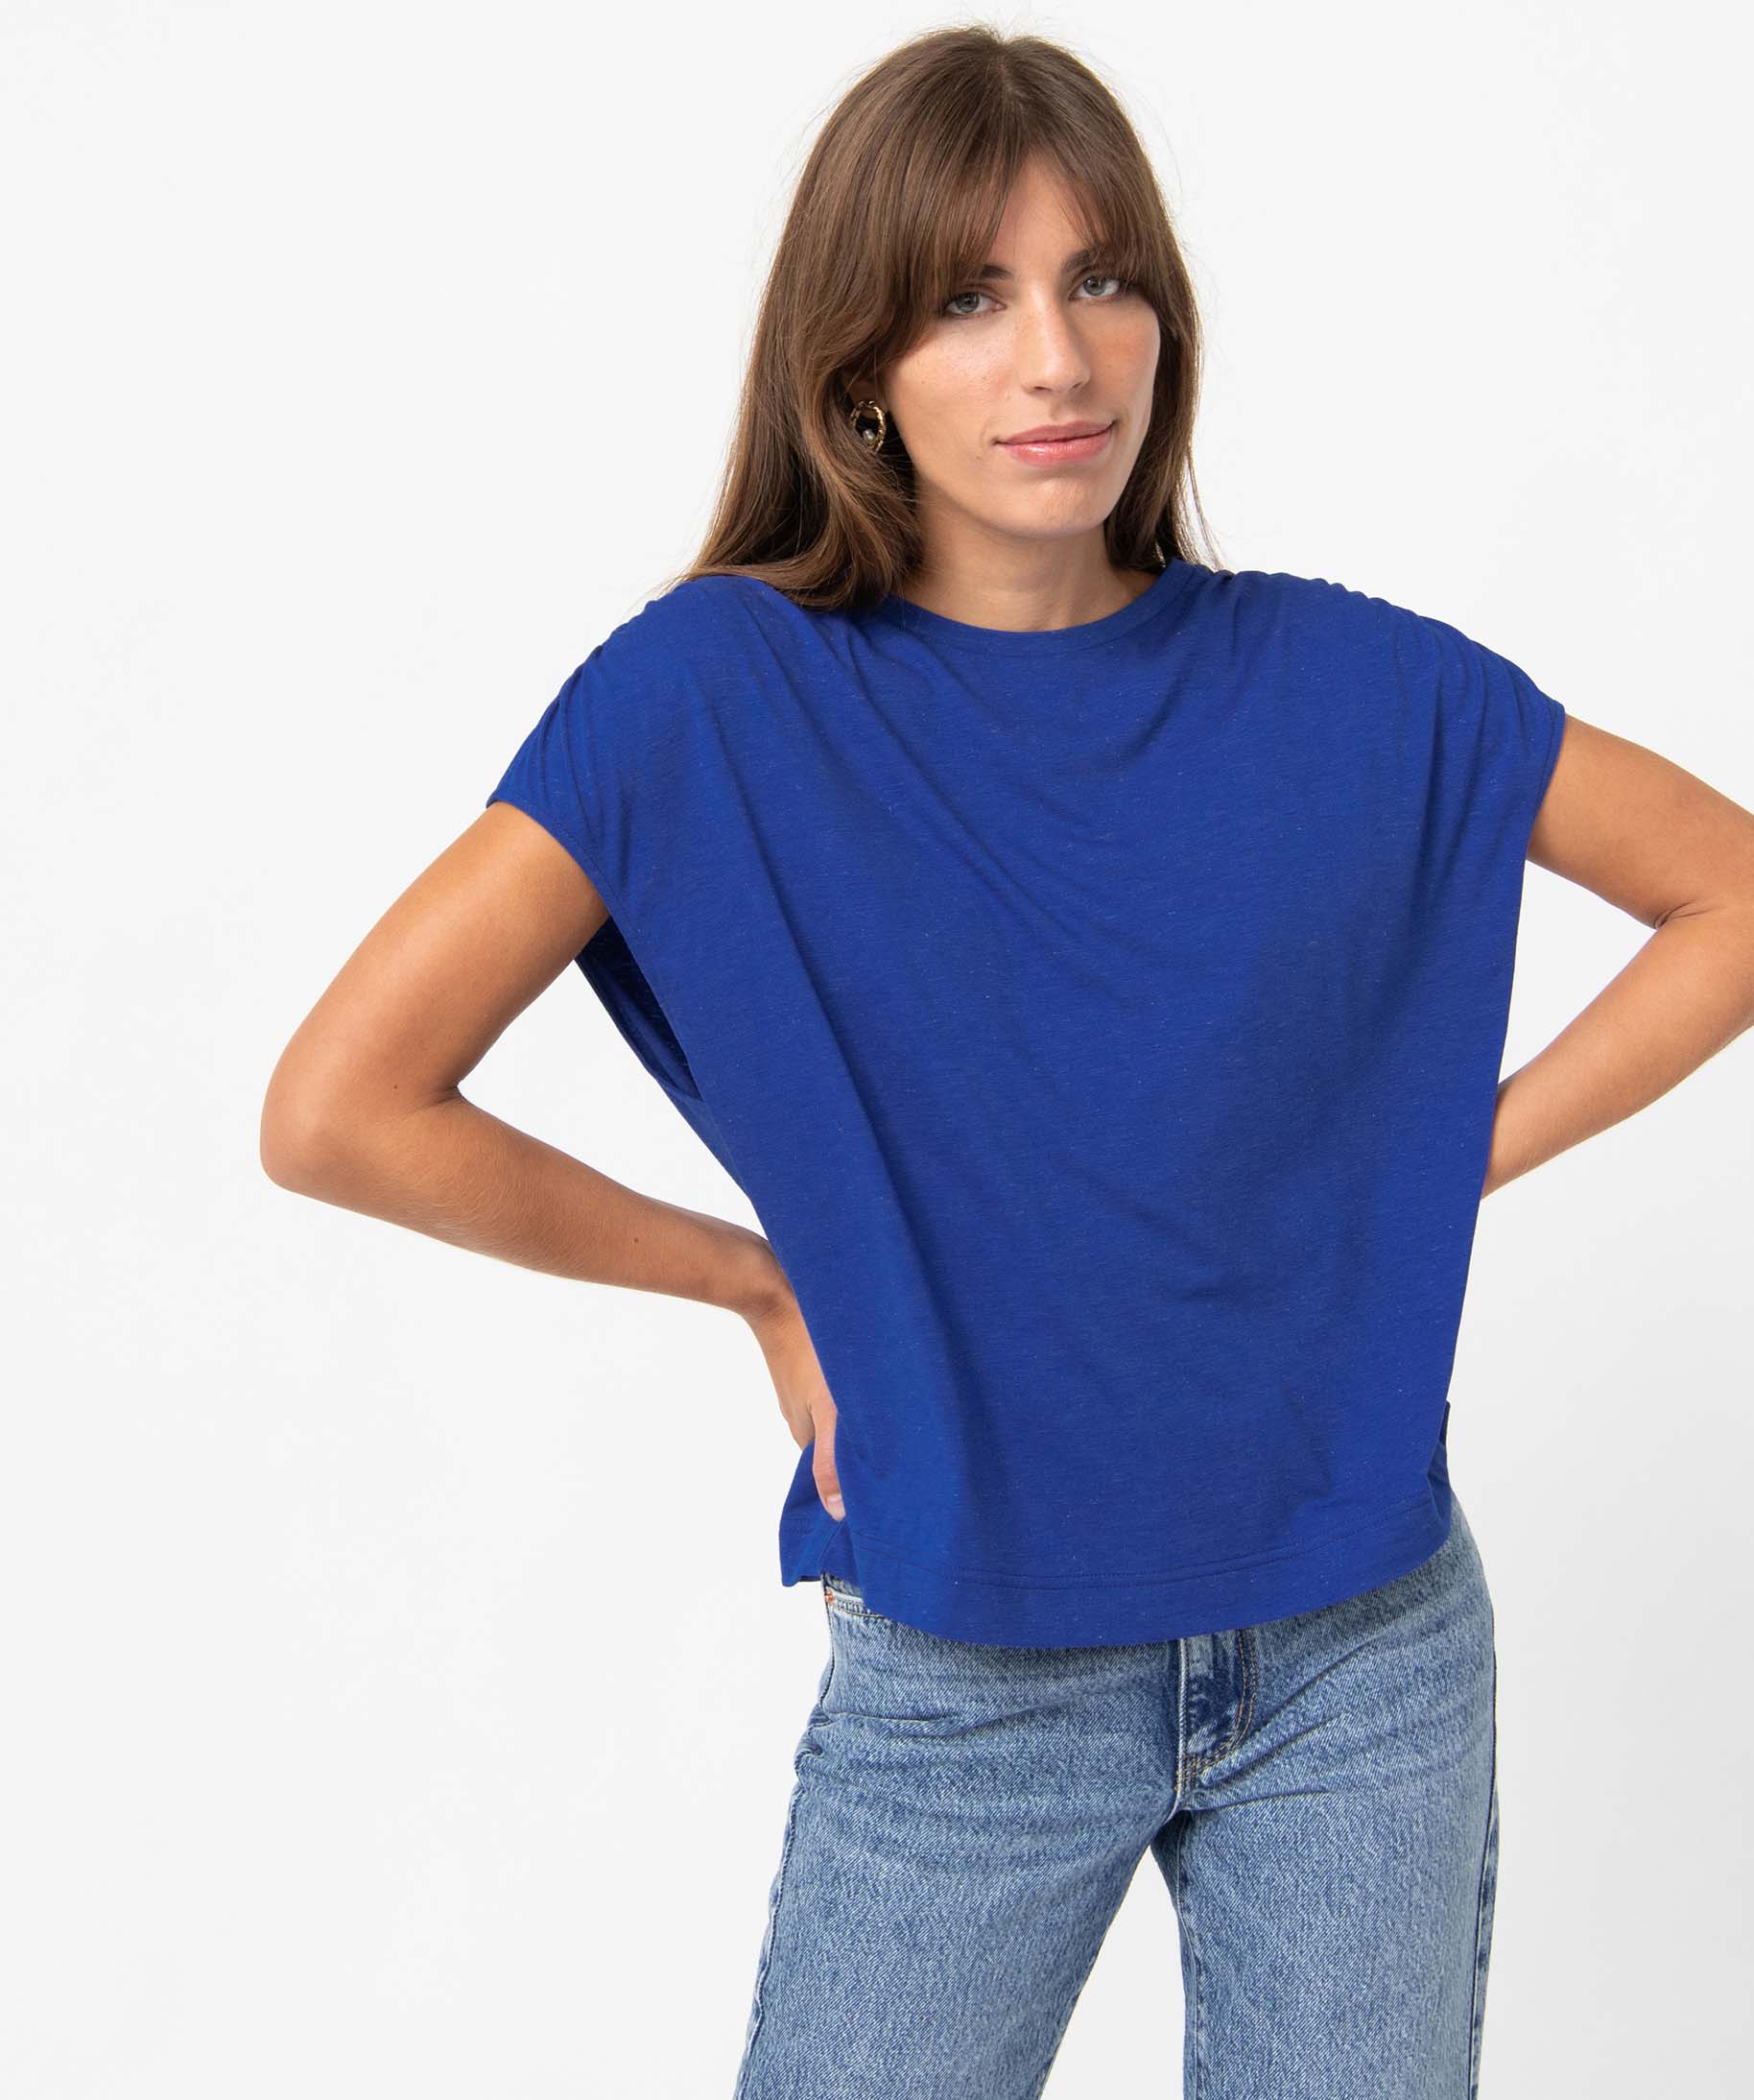 tee-shirt femme loose et paillete bleu t-shirts manches courtes